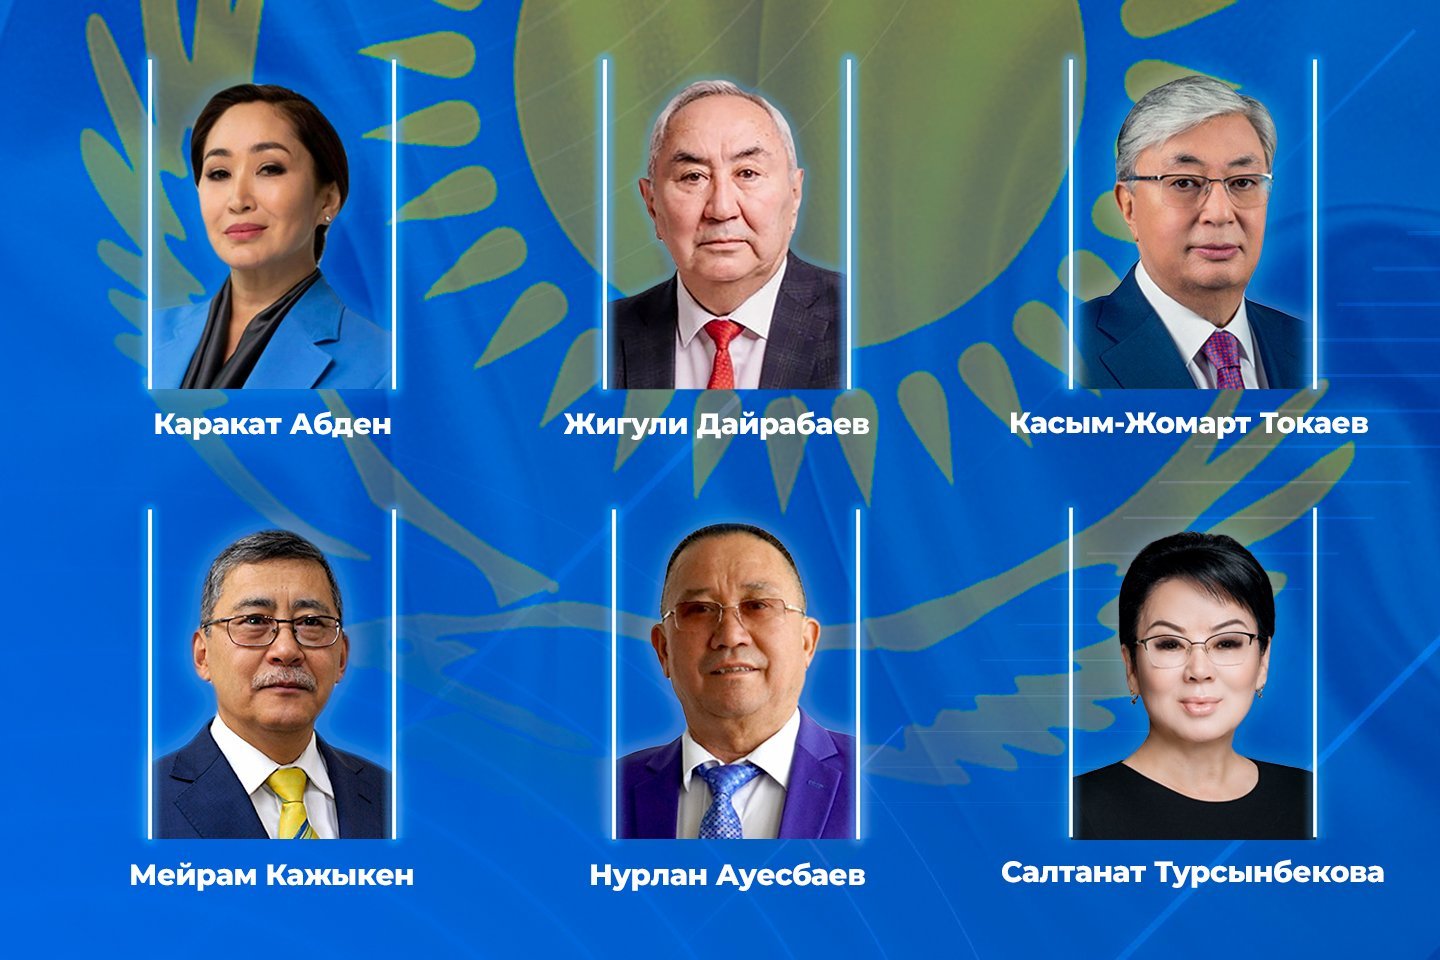 Новости Казахстана / Общество в Казахстане / Что пообещали казахстанцам кандидаты в президенты РК